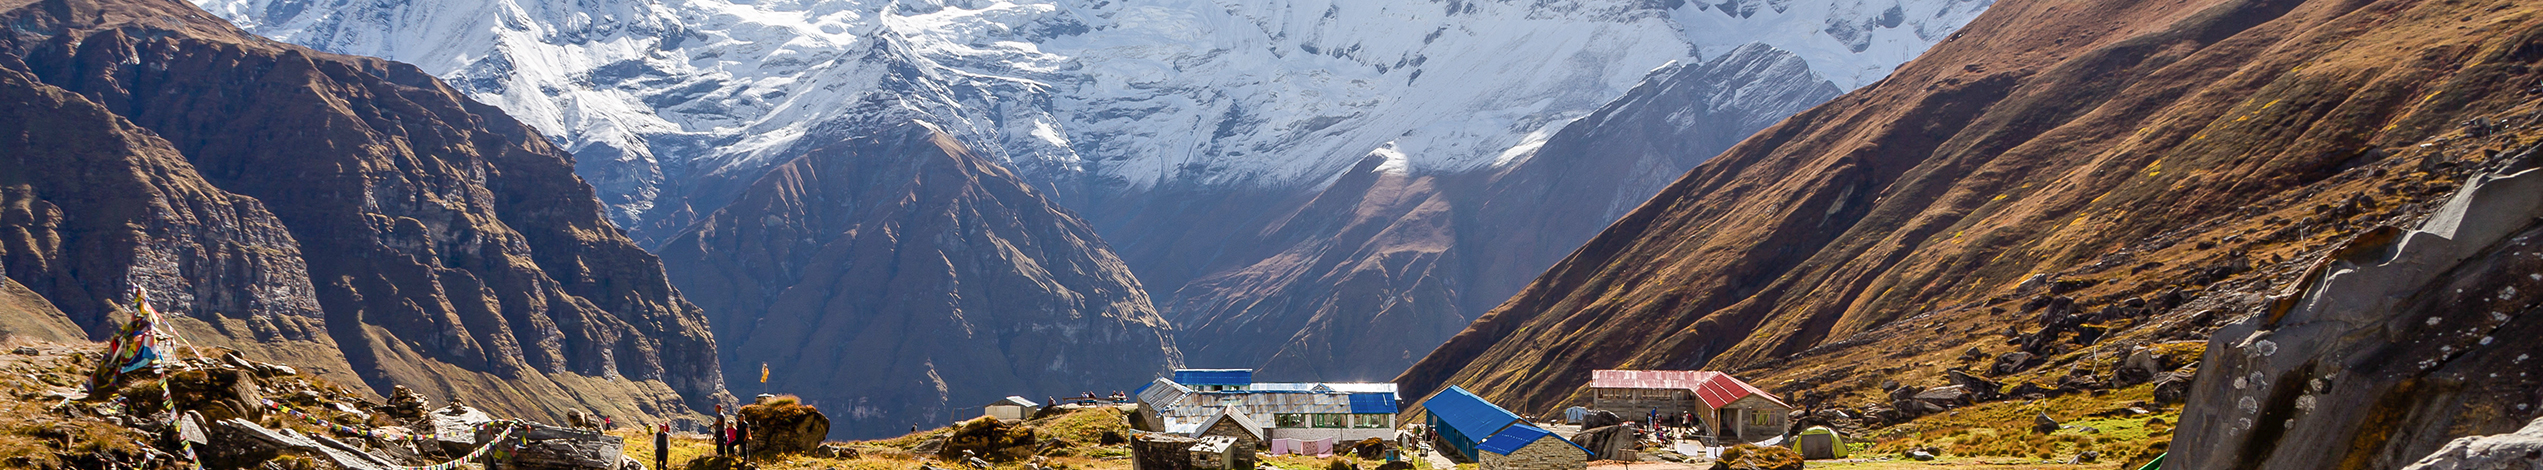 Tag med Jysk Rejsebureau til Annapurna Base Camp